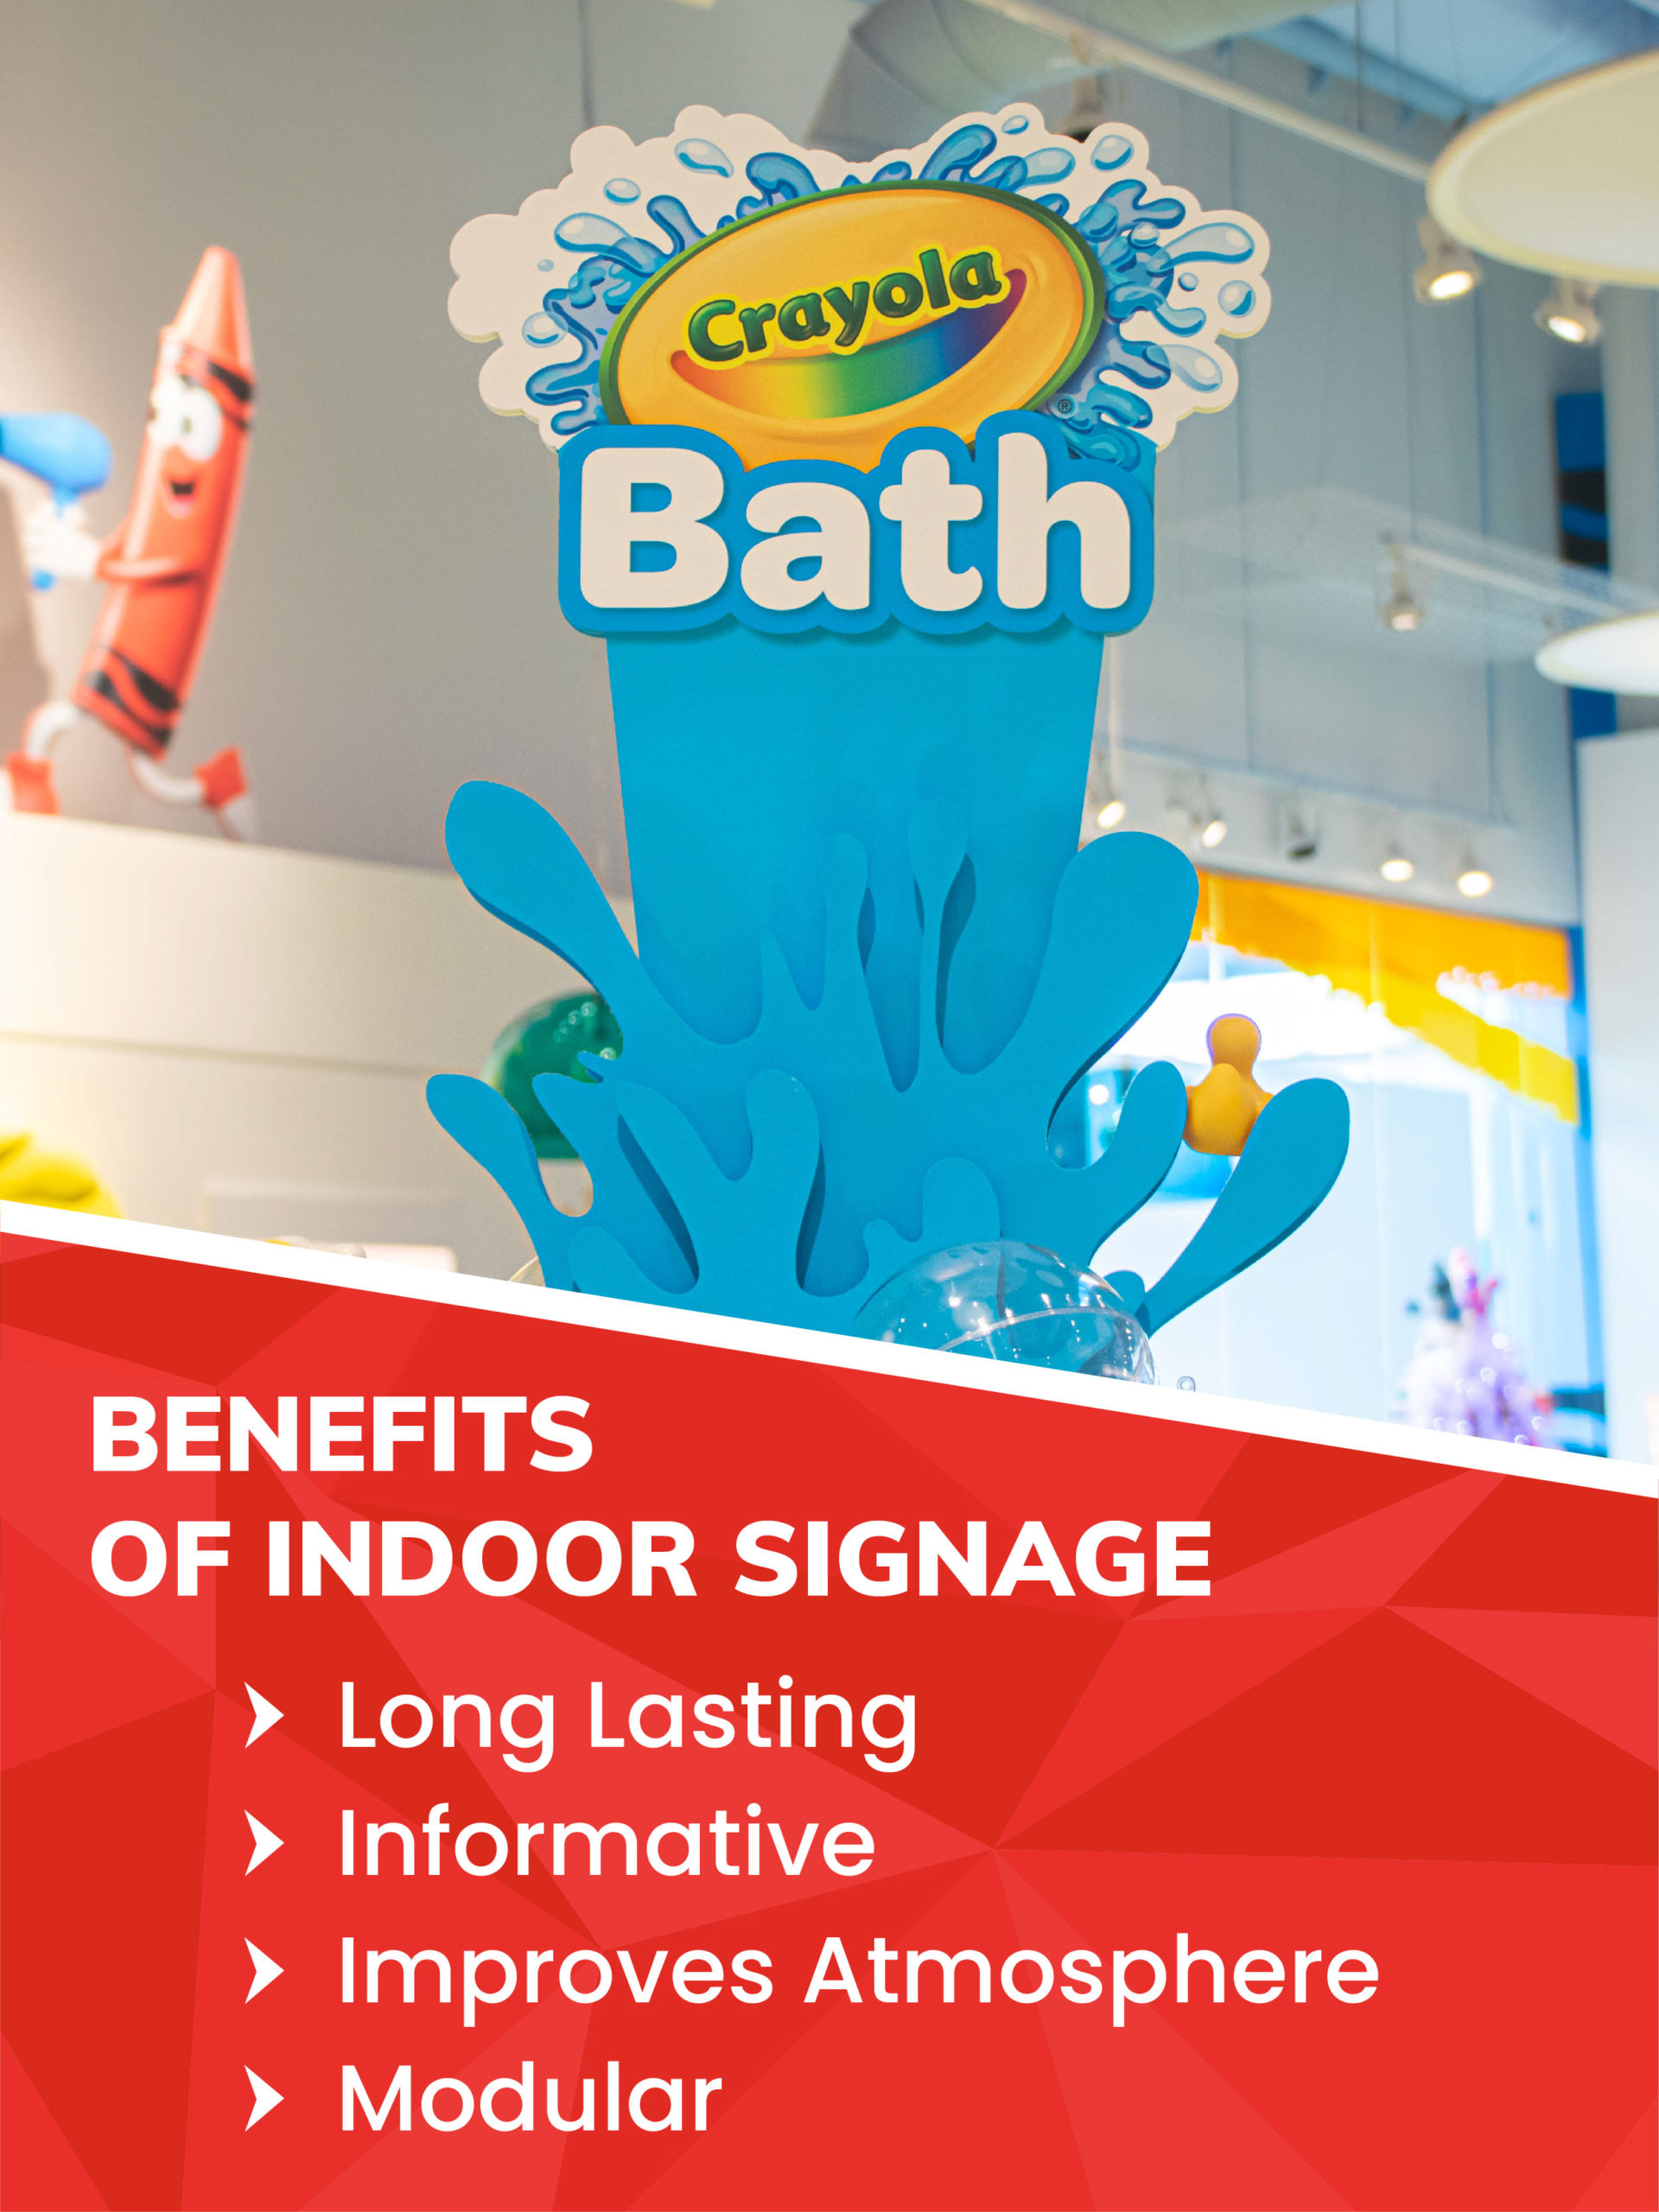 List of benefits of indoor signage